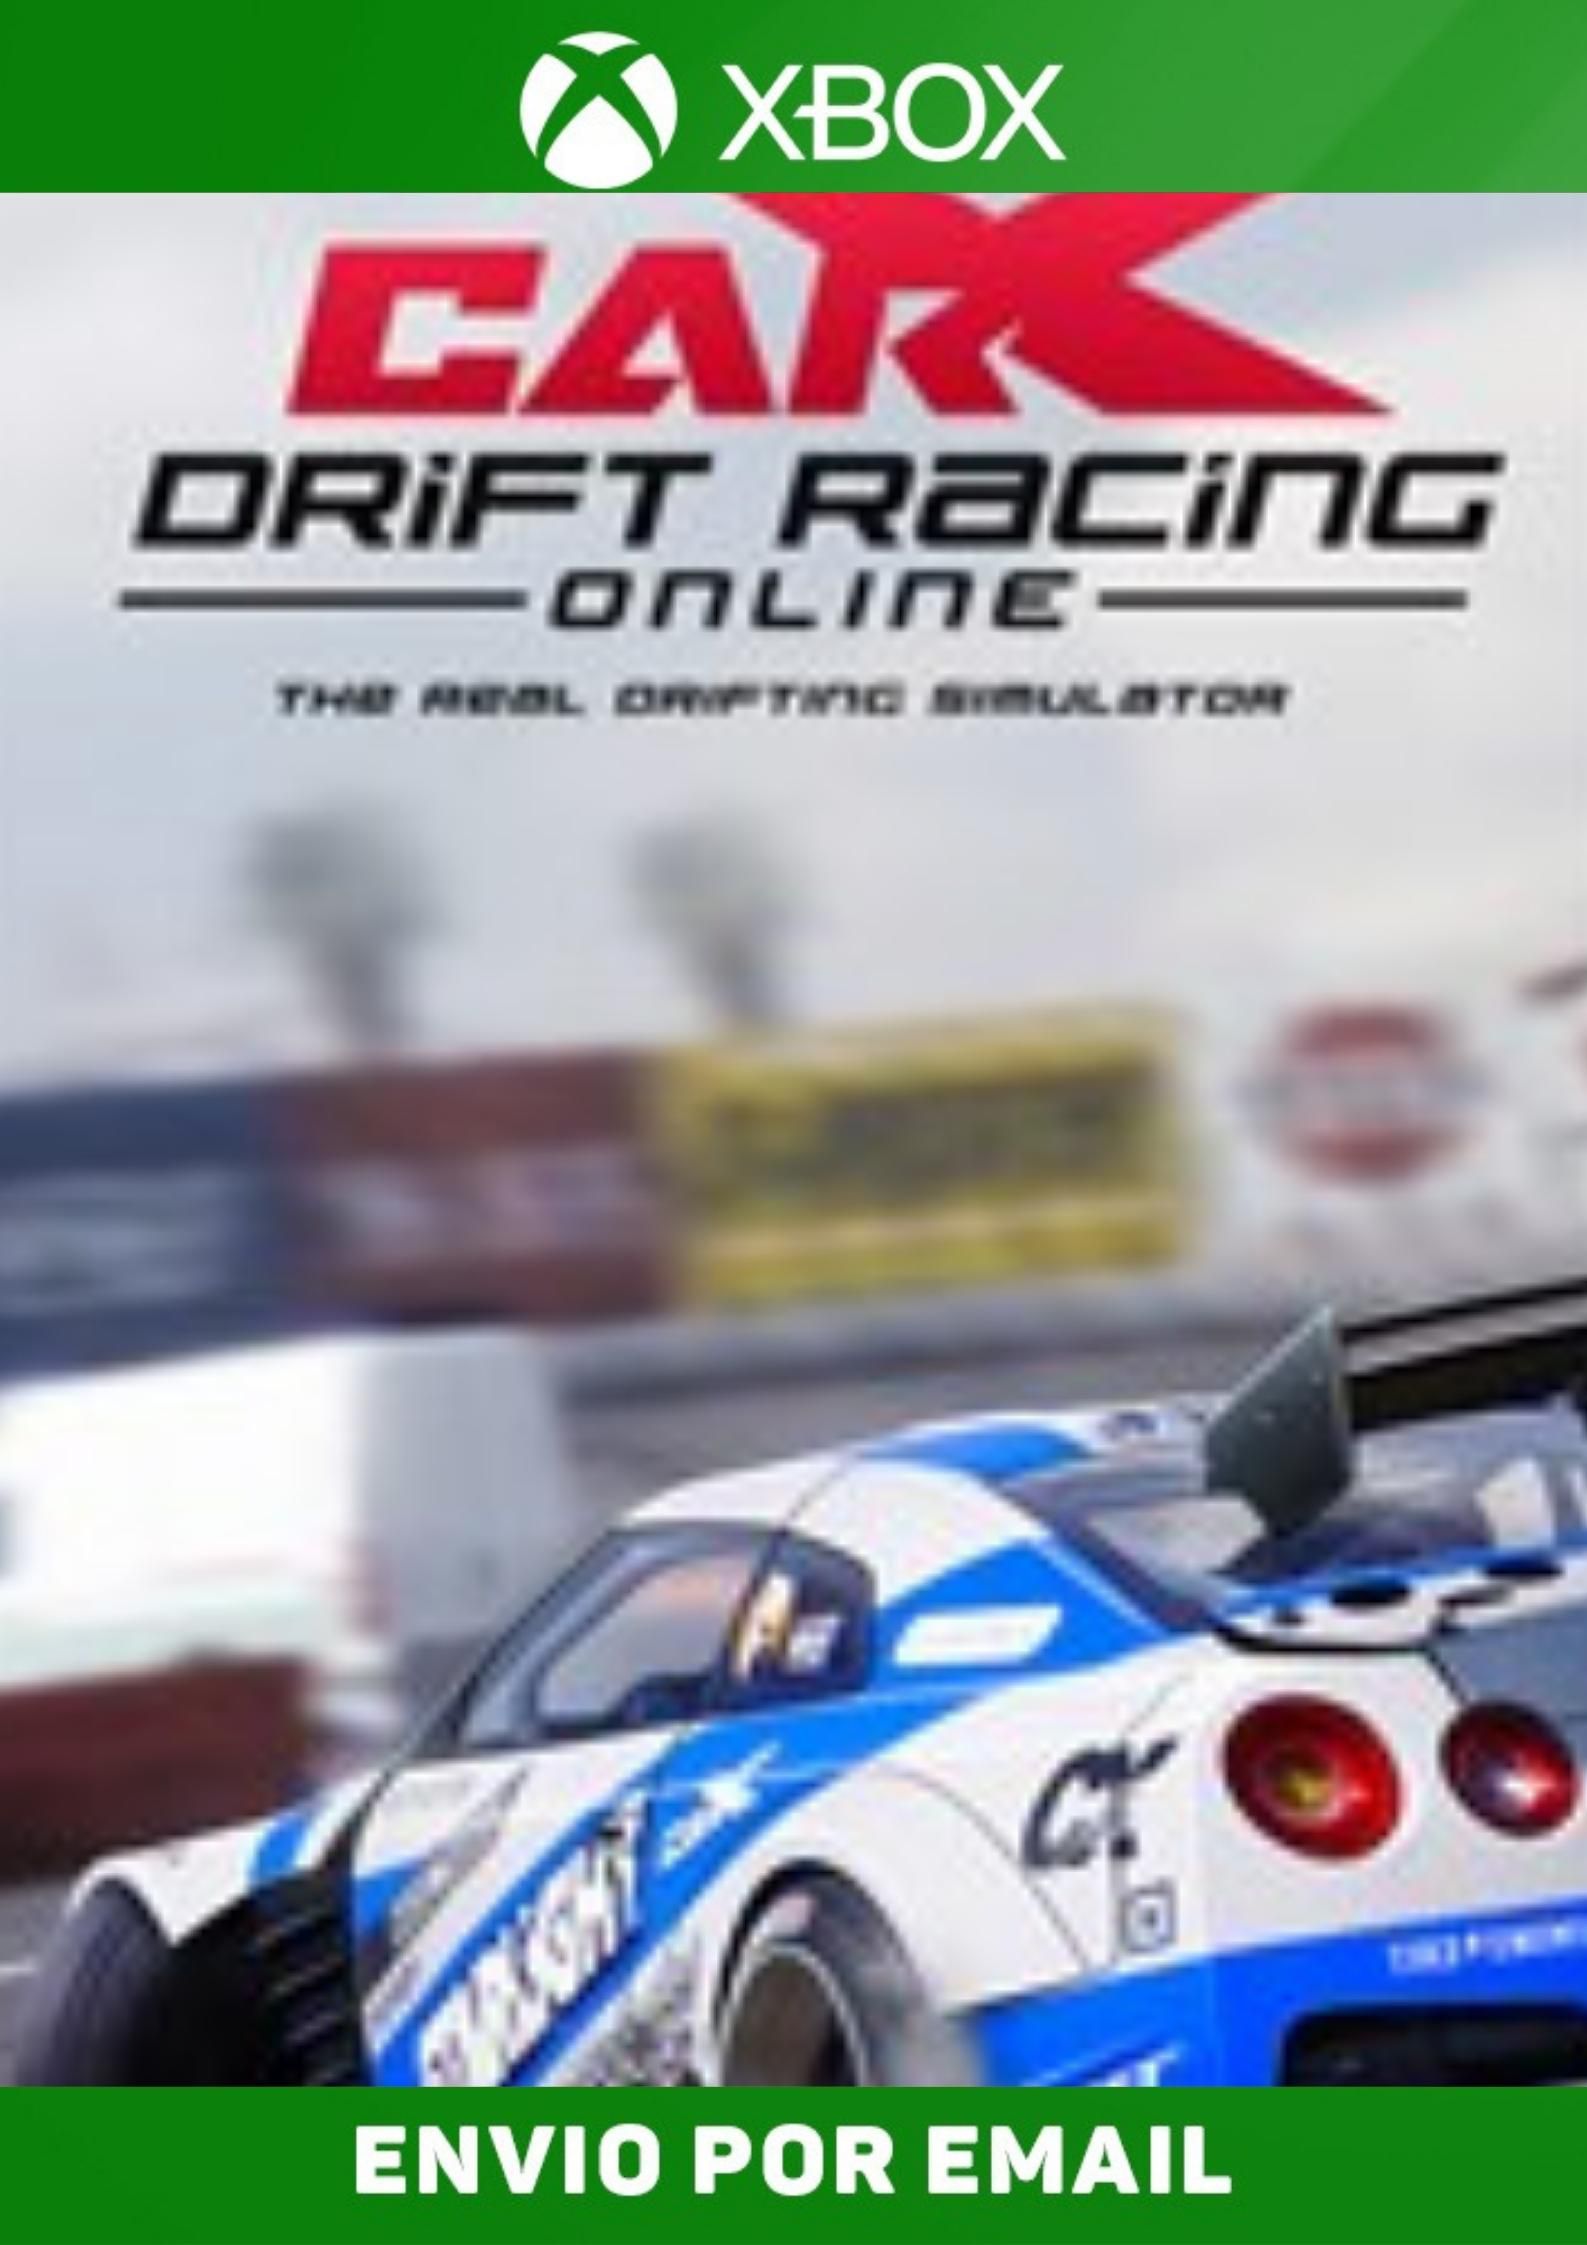 Os 12 melhores jogos de drift para cantar pneu - Jogos 360